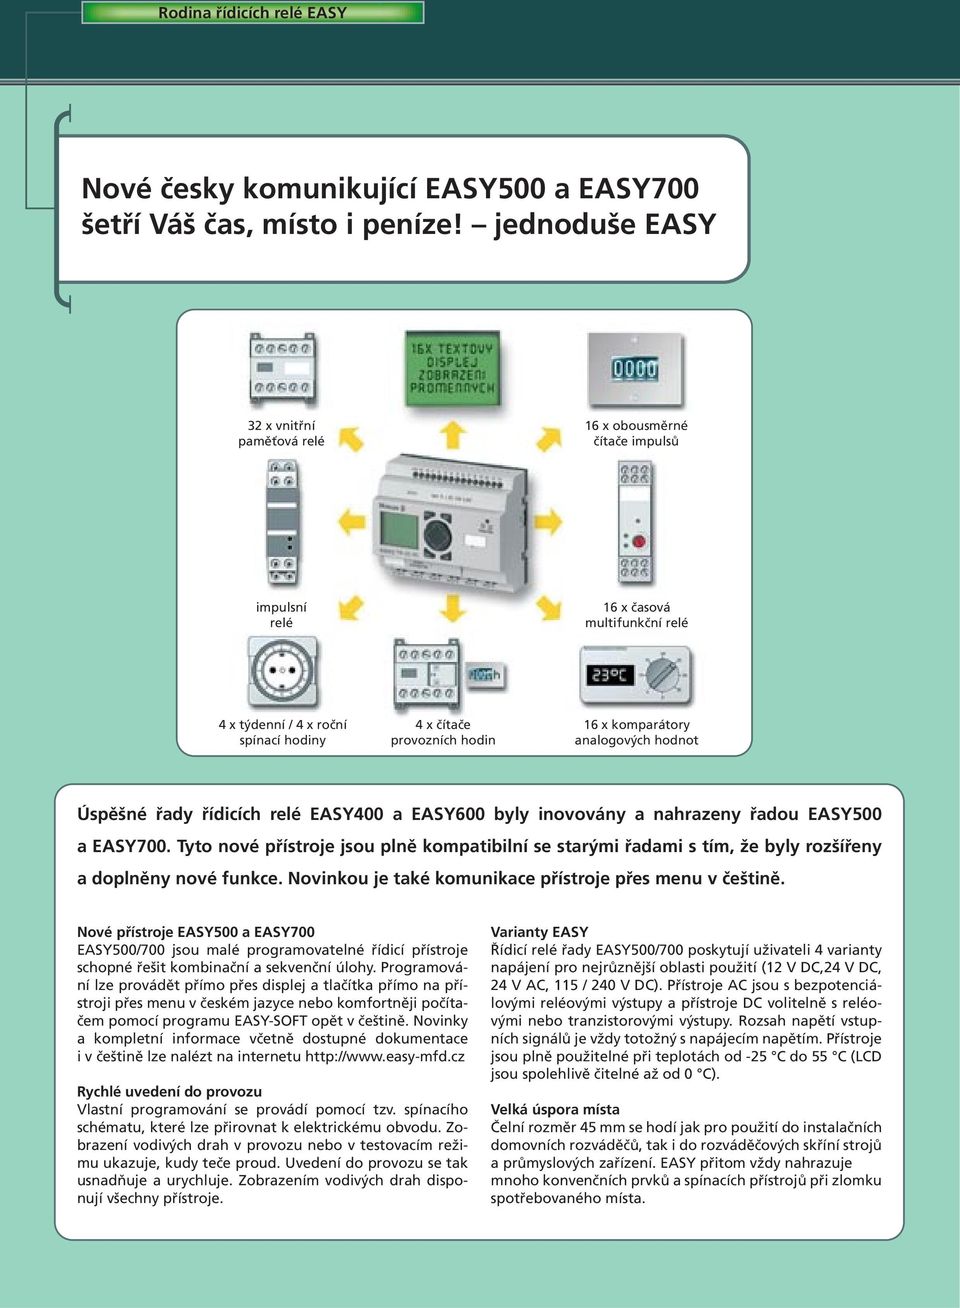 komparátory analogových hodnot Úspěšné řady řídicích relé EASY400 a EASY600 byly inovovány a nahrazeny řadou EASY500 a EASY700.